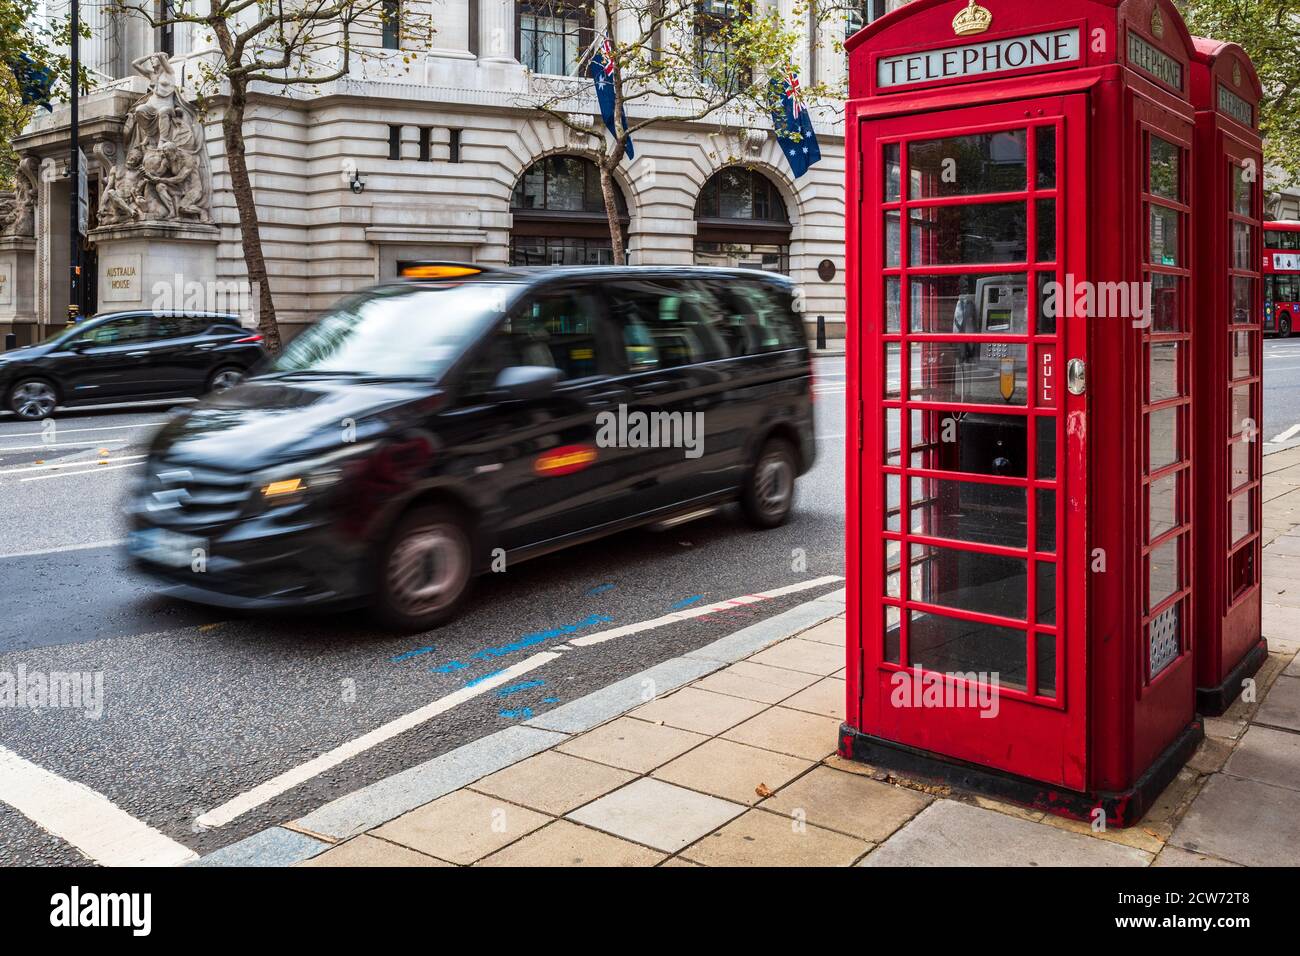 Iconica Londra - un Mercedes Vito London Taxi passa due tradizionali scatole telefoniche rosse nel centro di Londra UK. Moto Blur del movimento del taxi. Foto Stock